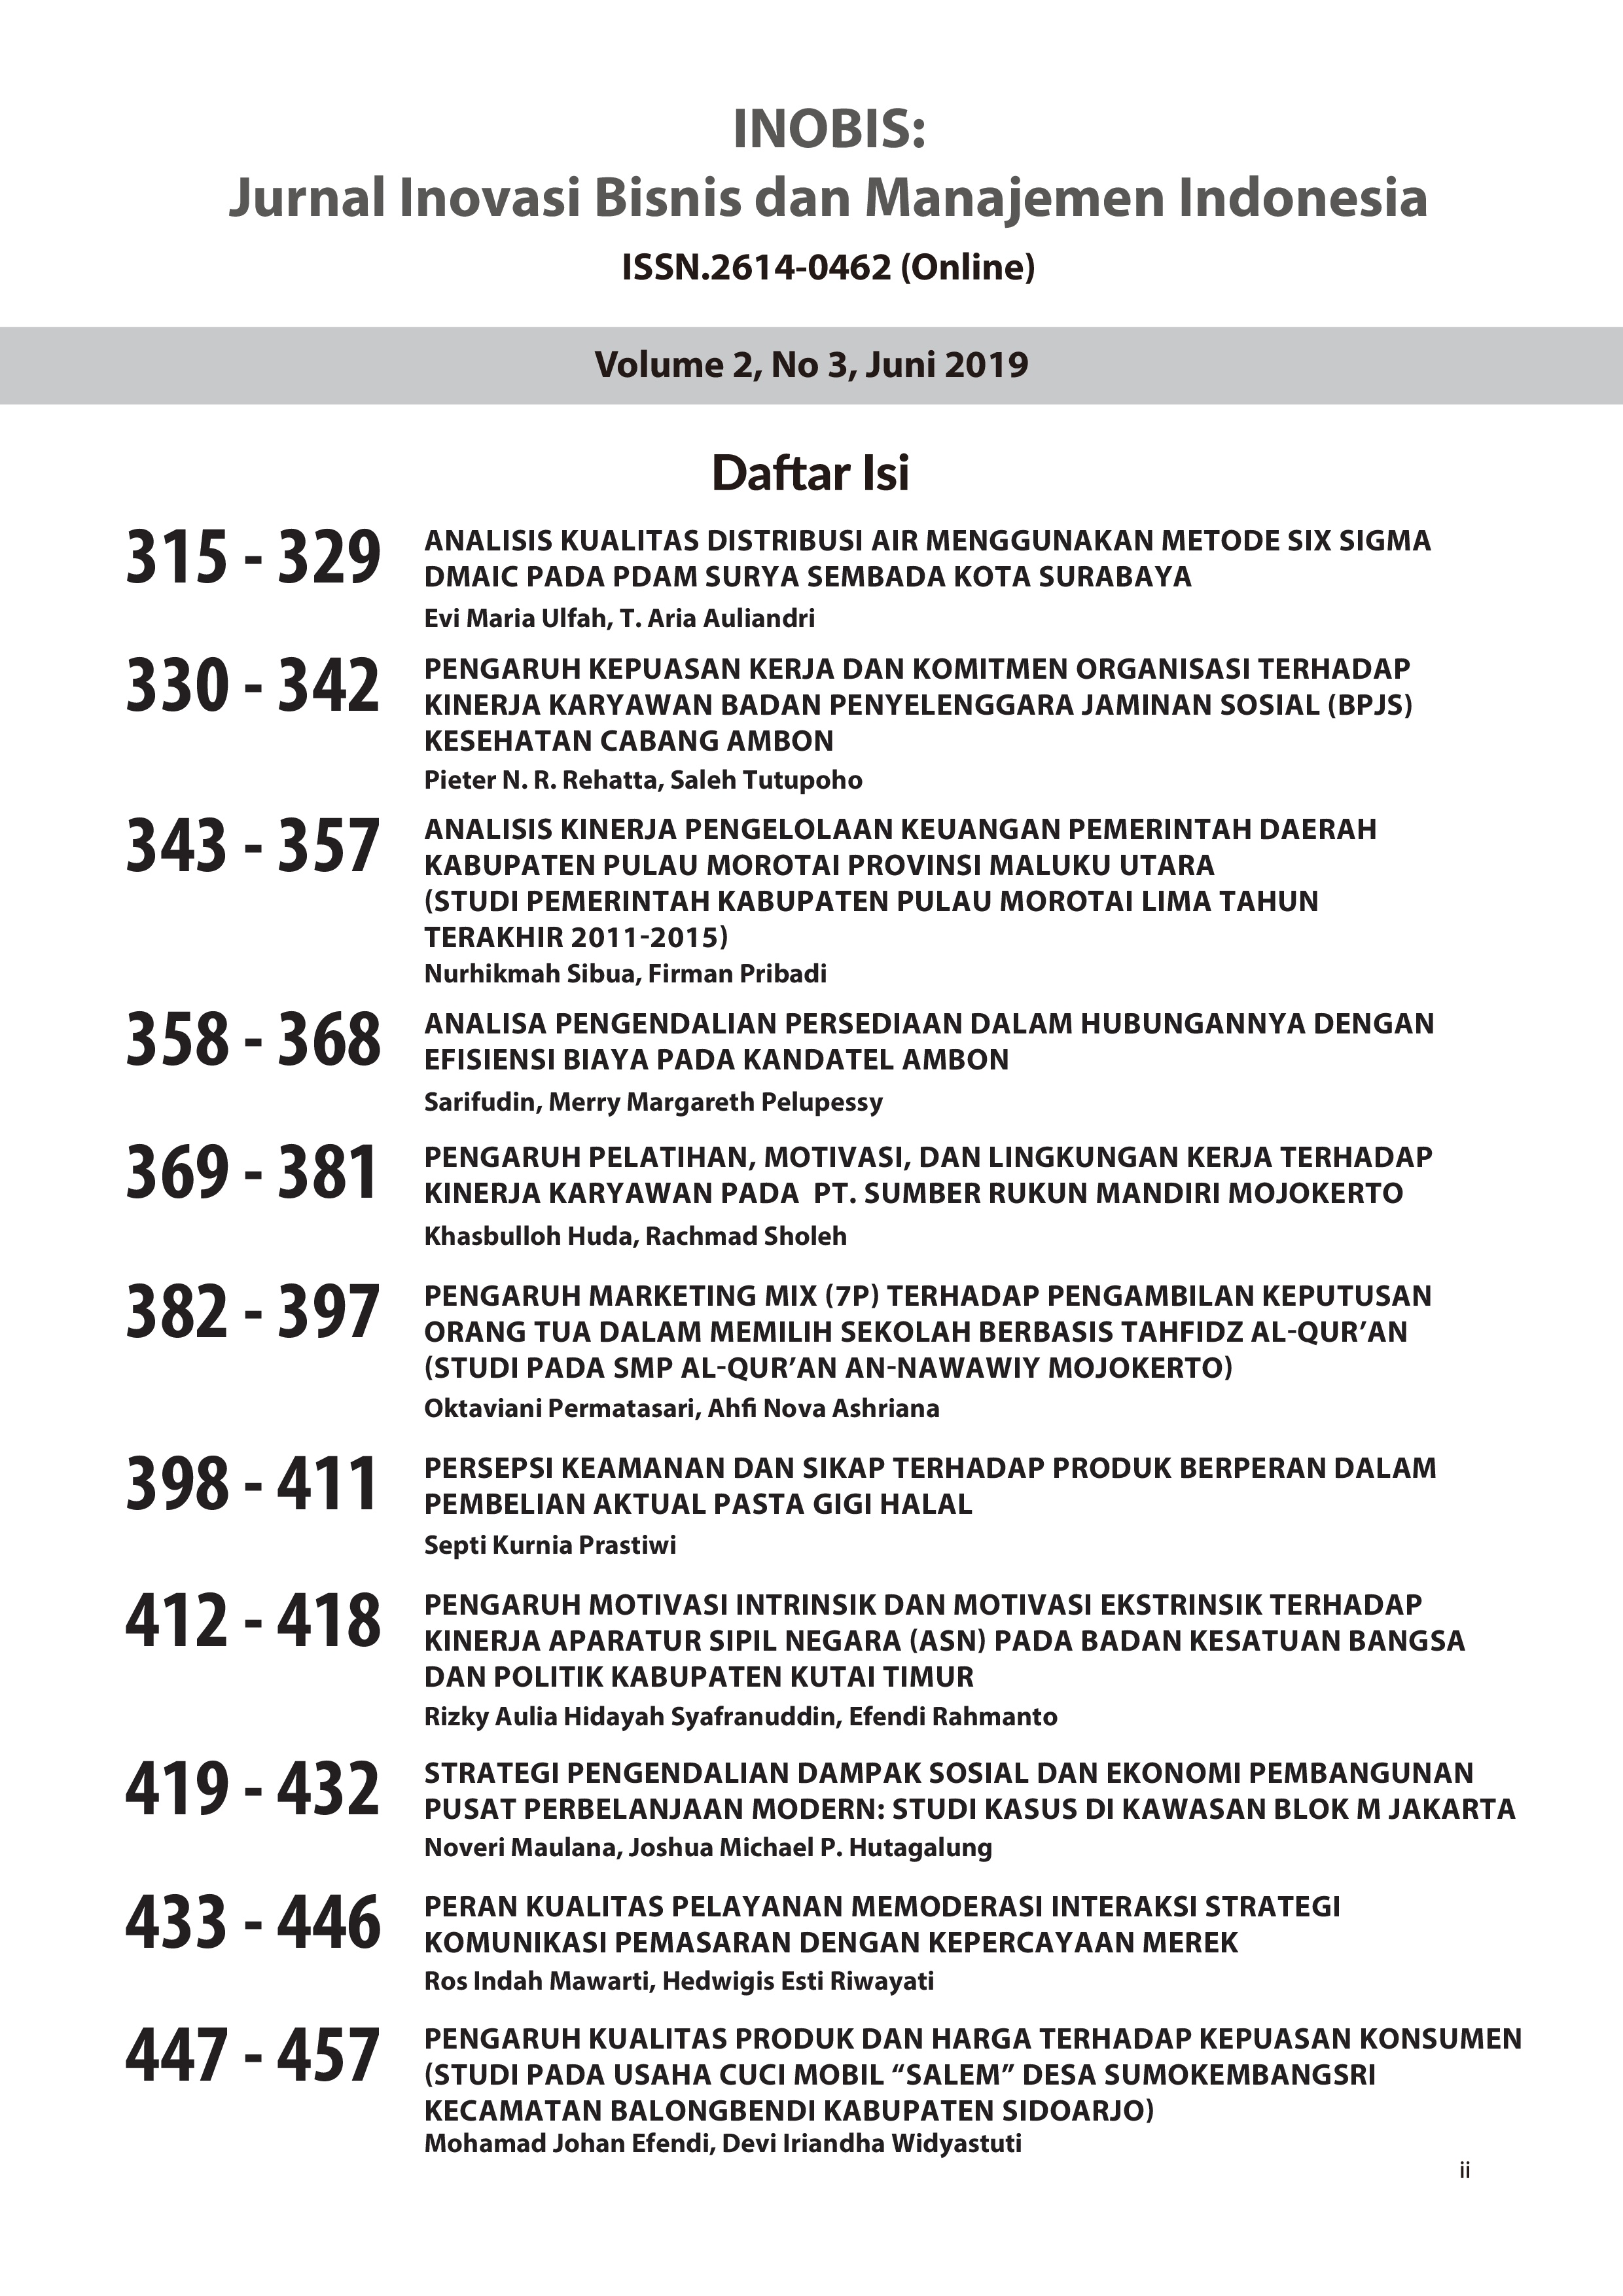 					View Vol. 2 No. 3 (2019): INOBIS: Jurnal Inovasi Bisnis dan Manajemen Indonesia - Edisi Juni 2019
				